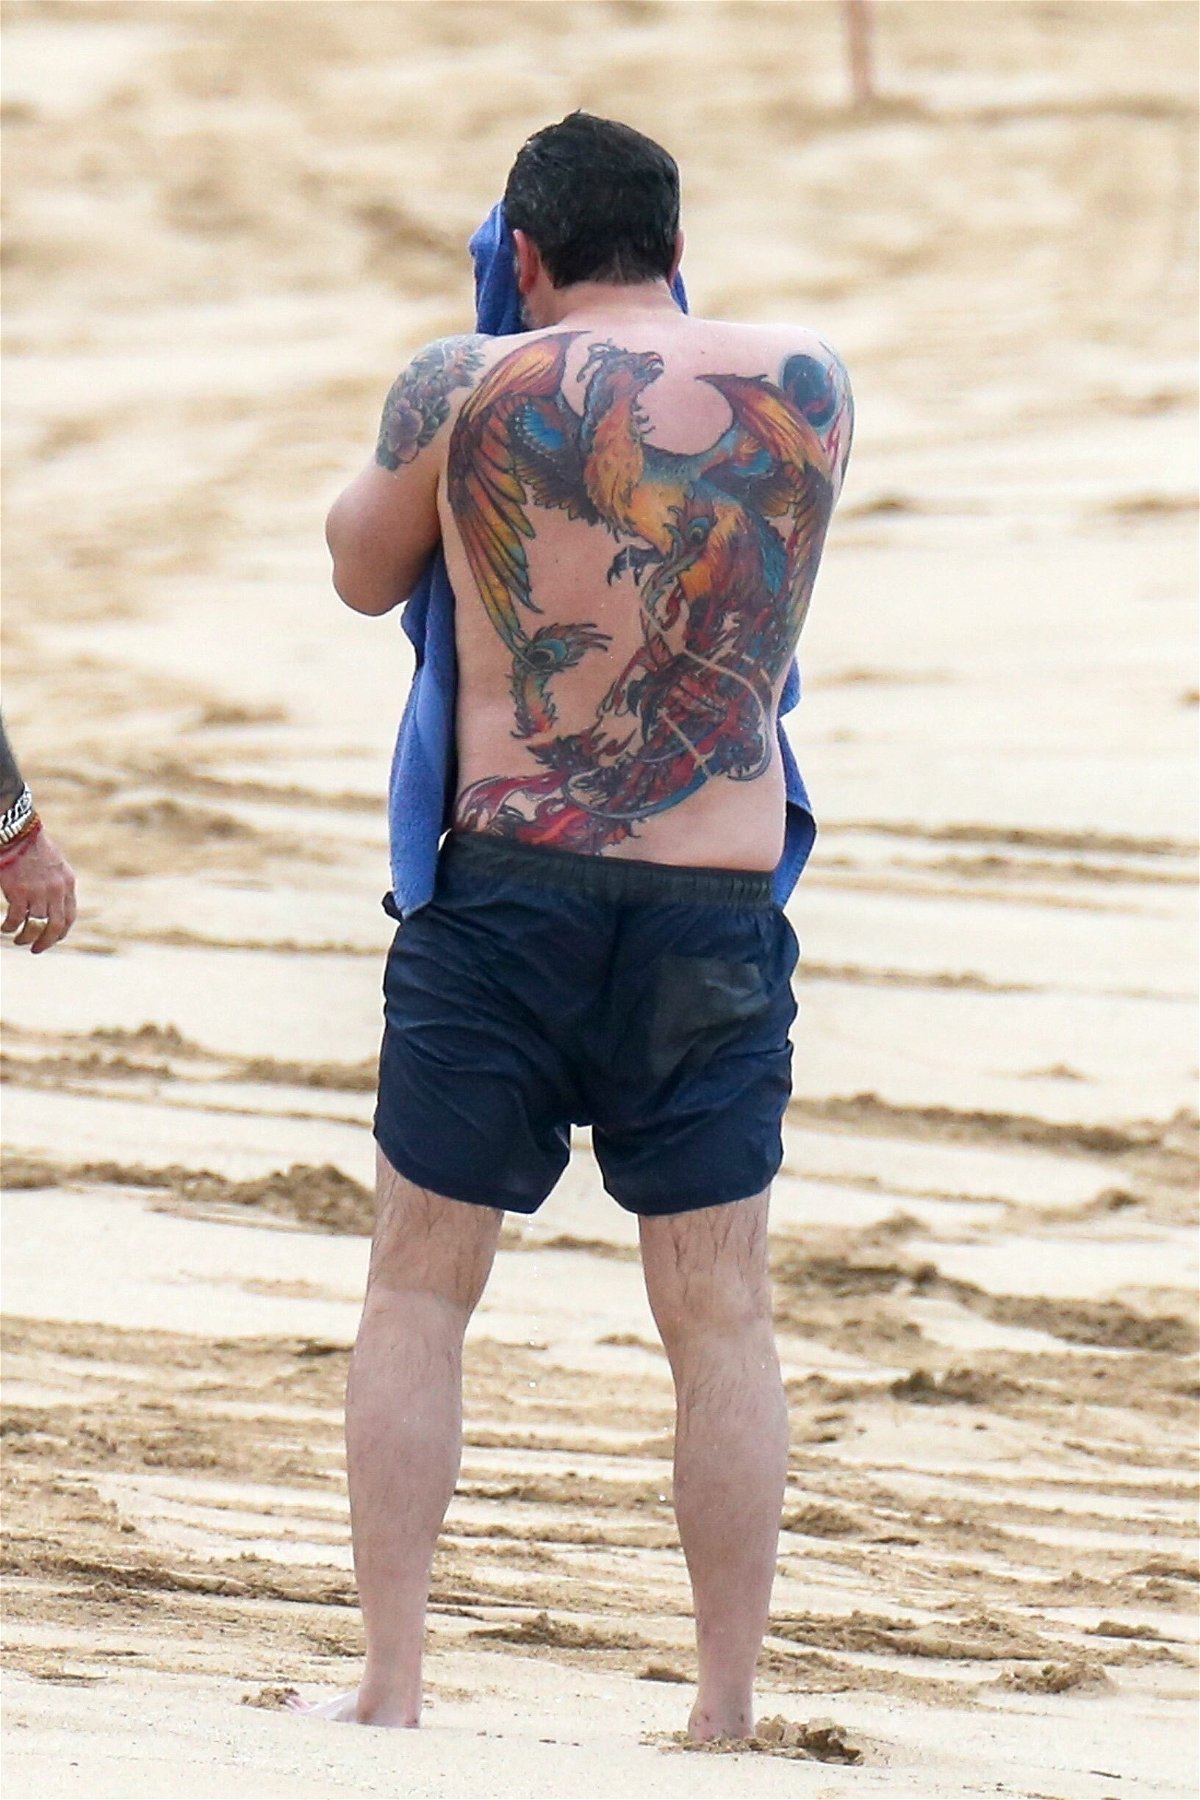 La fenice tatuata sulla schiena di Ben Affleck